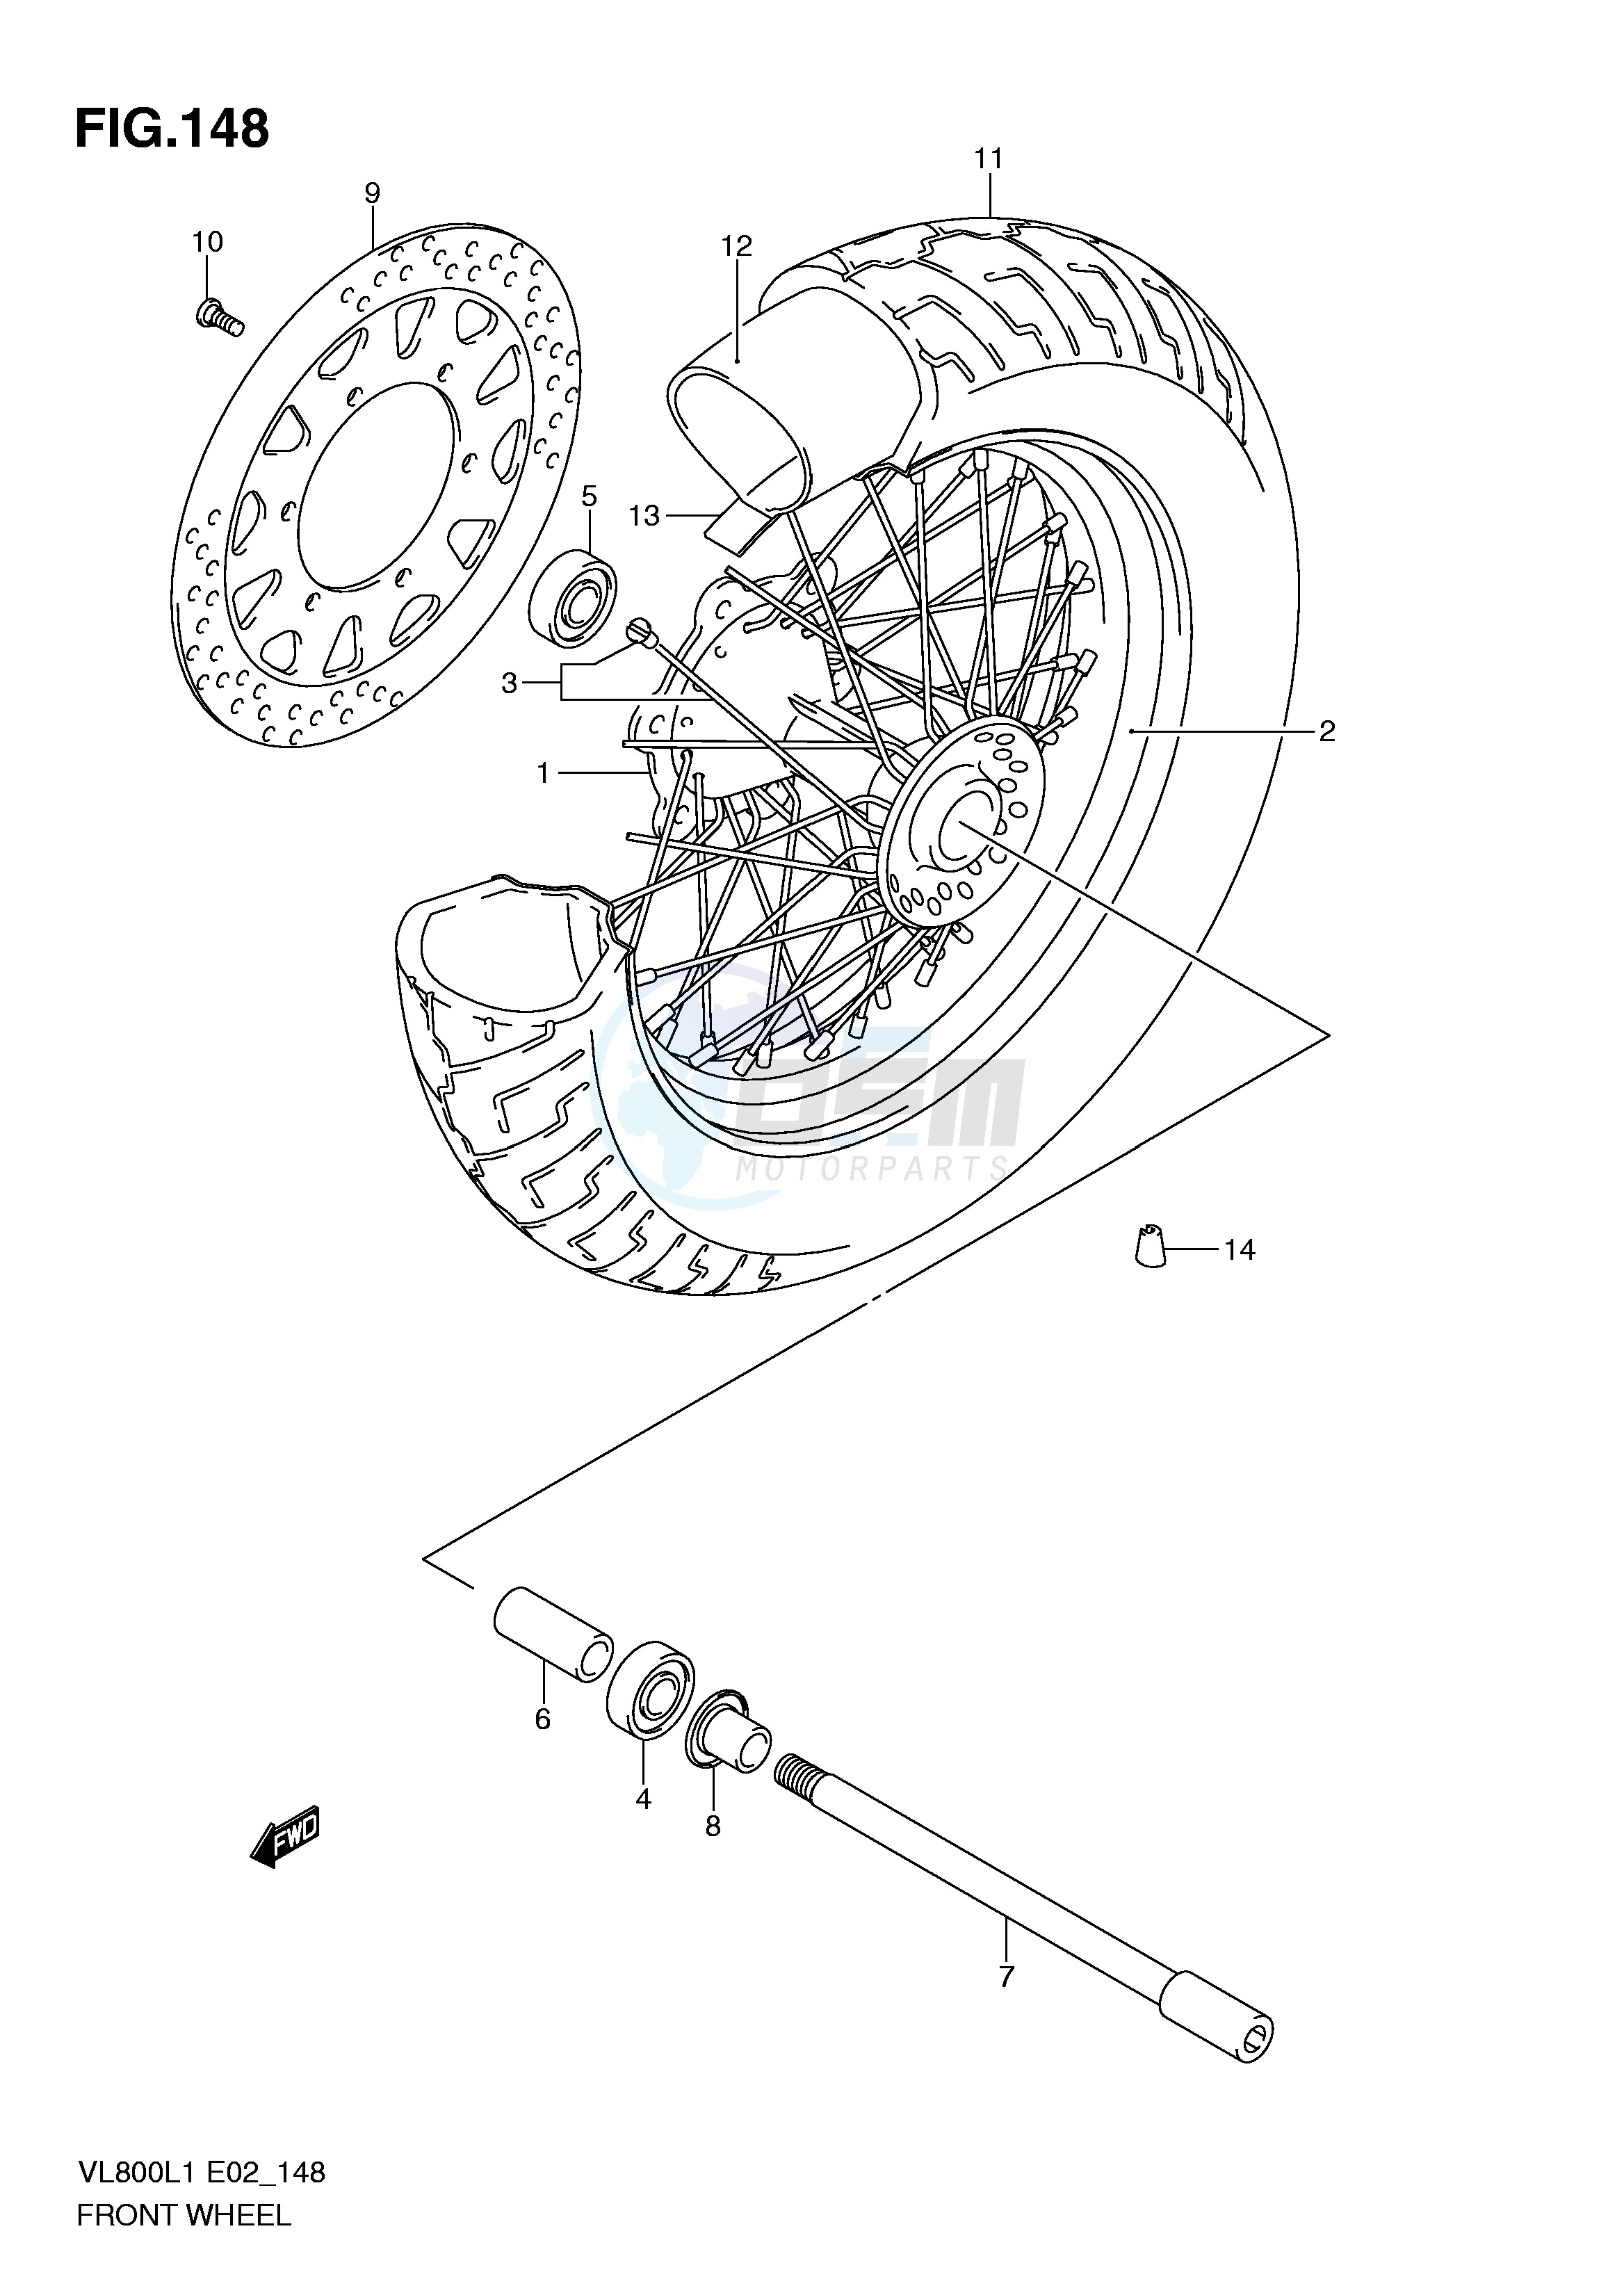 FRONT WHEEL (VL800L1 E2) blueprint